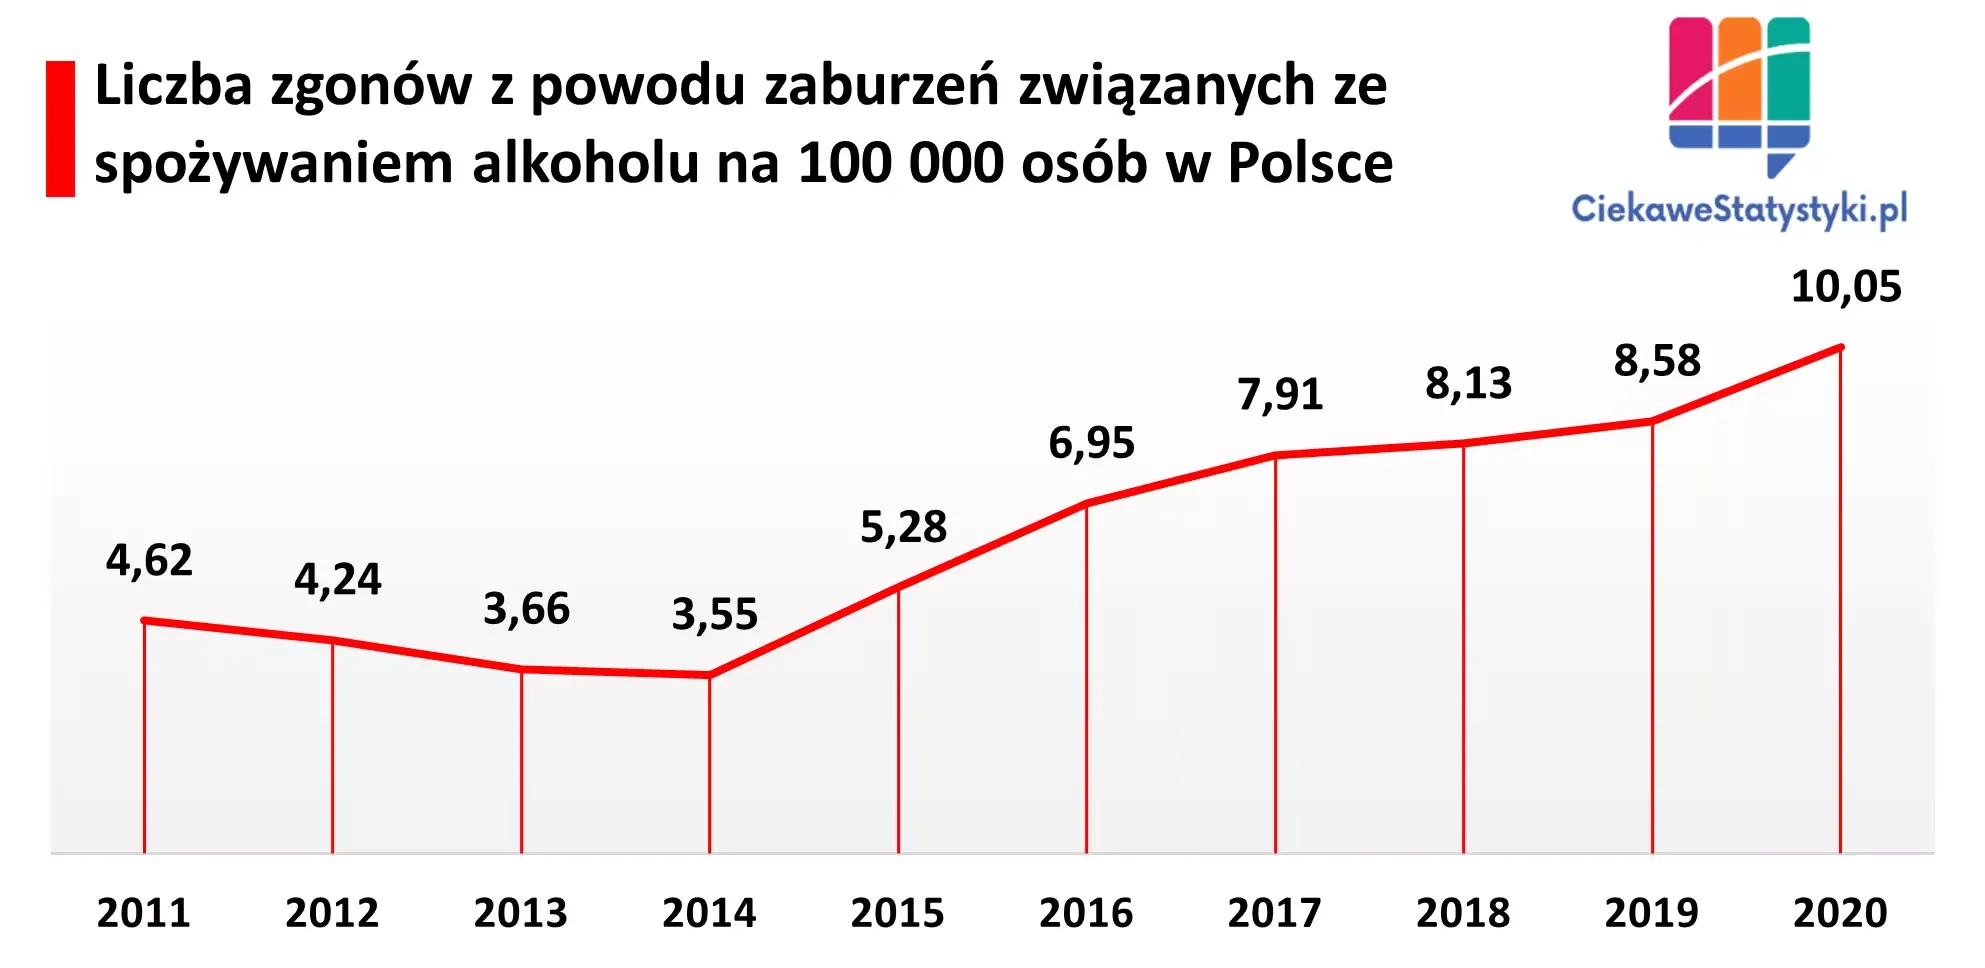 Wykres pokazuje ile osób w Polsce umiera z powodu zaburzeń związanych ze spożywaniem alkoholu